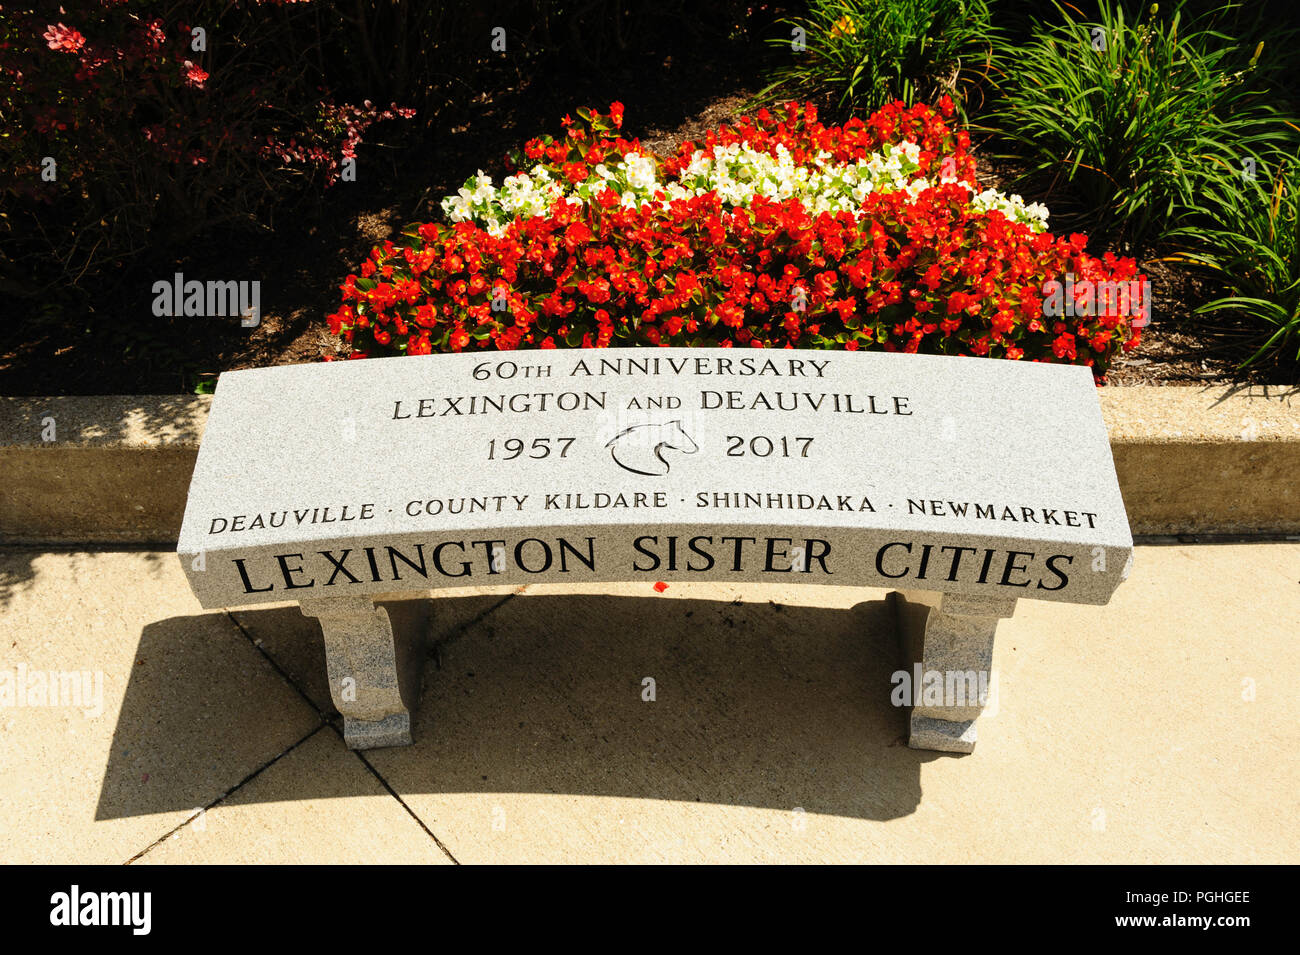 Lexington villes soeurs avec Deauville, comté de Kildare, Shinhidaka, et Newmarket Banque D'Images